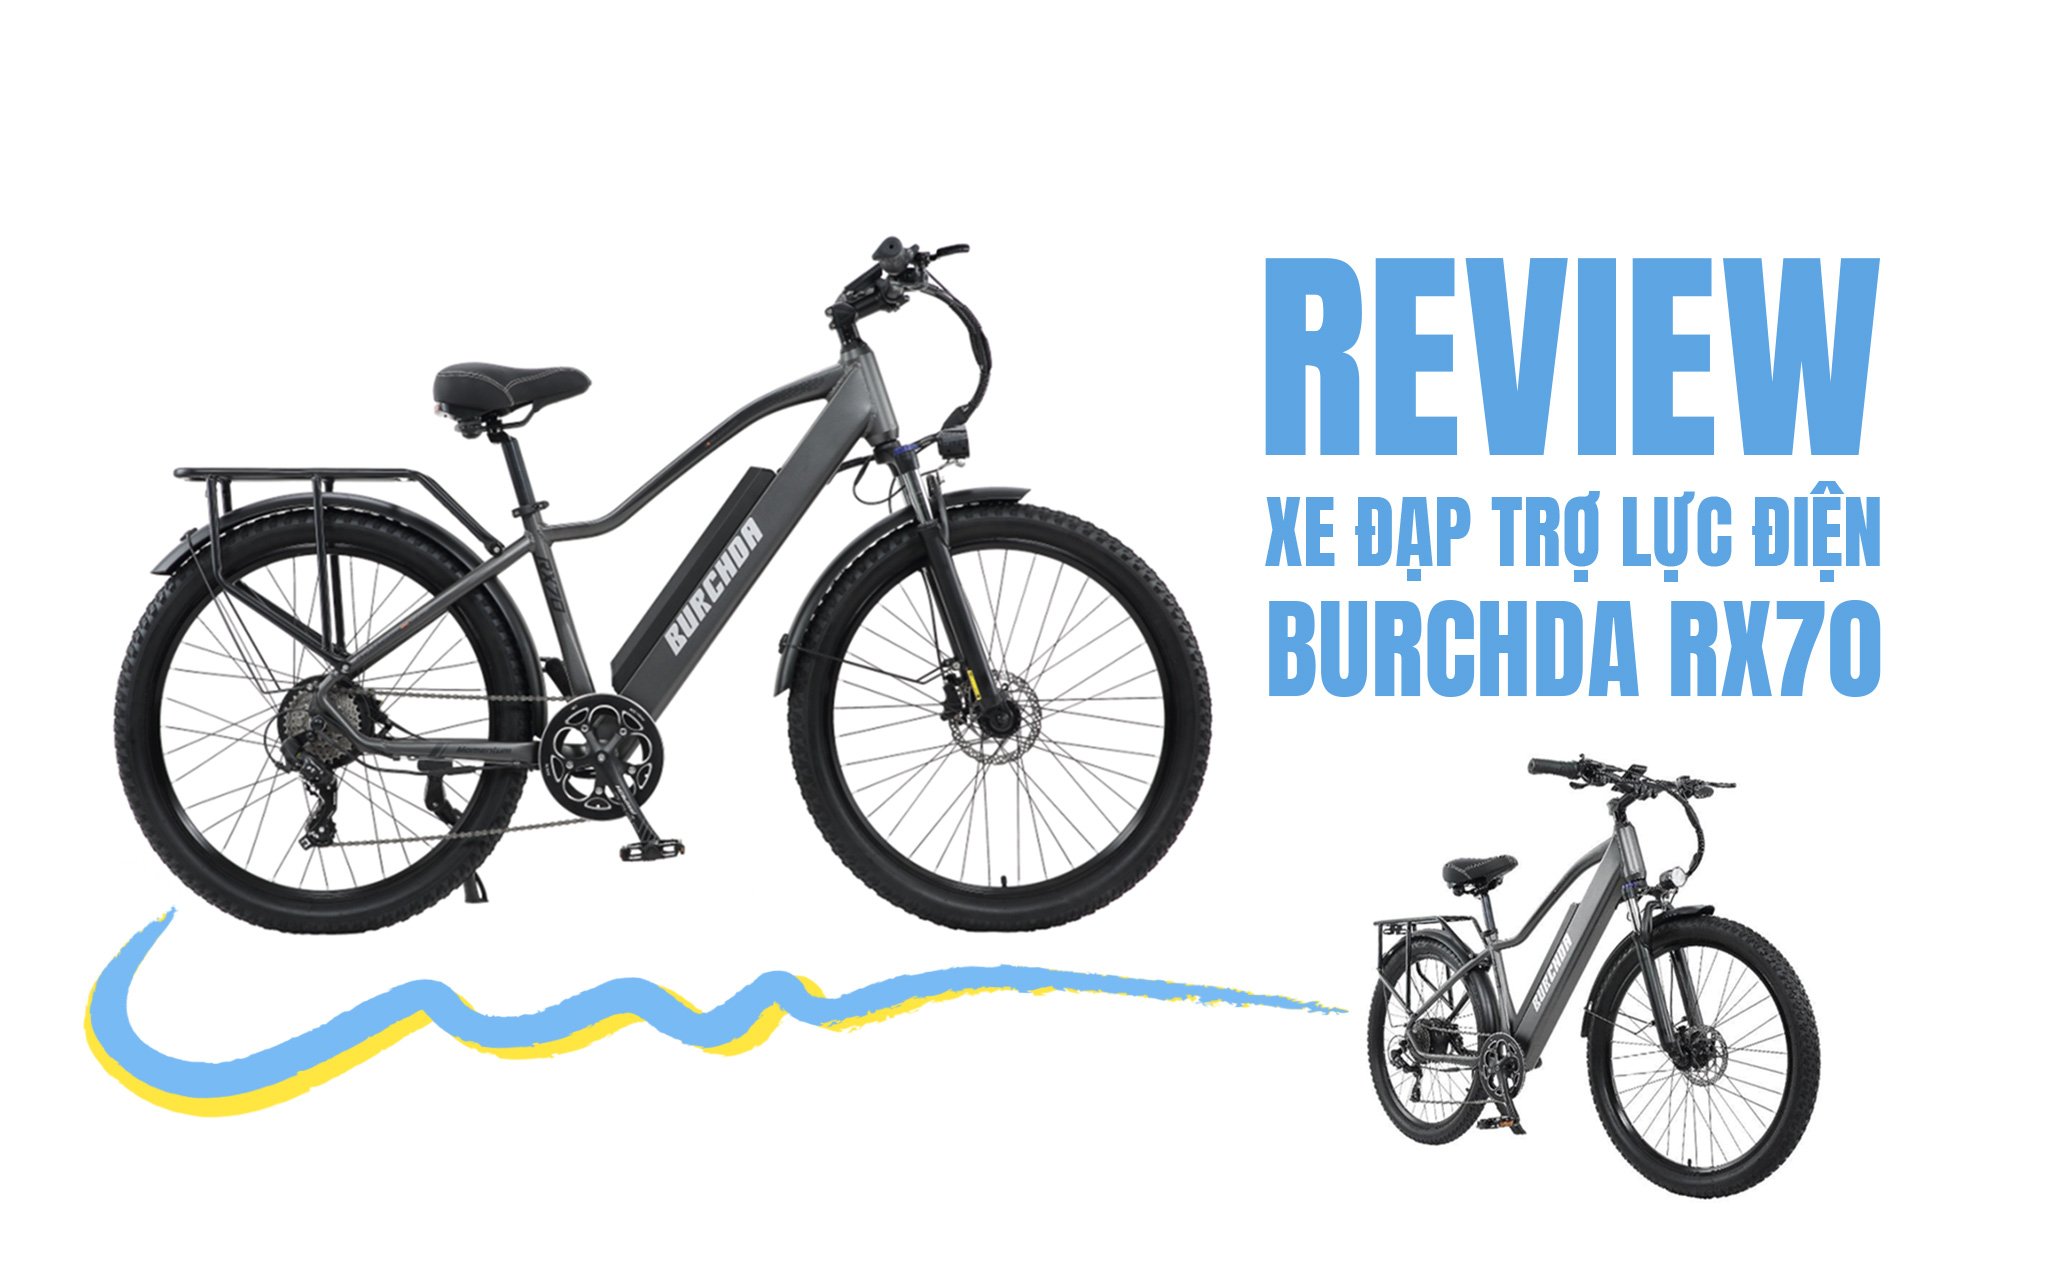 Review xe đạp trợ lực điện Burchda Rx70: thiết kế cực chiến, động cơ trâu